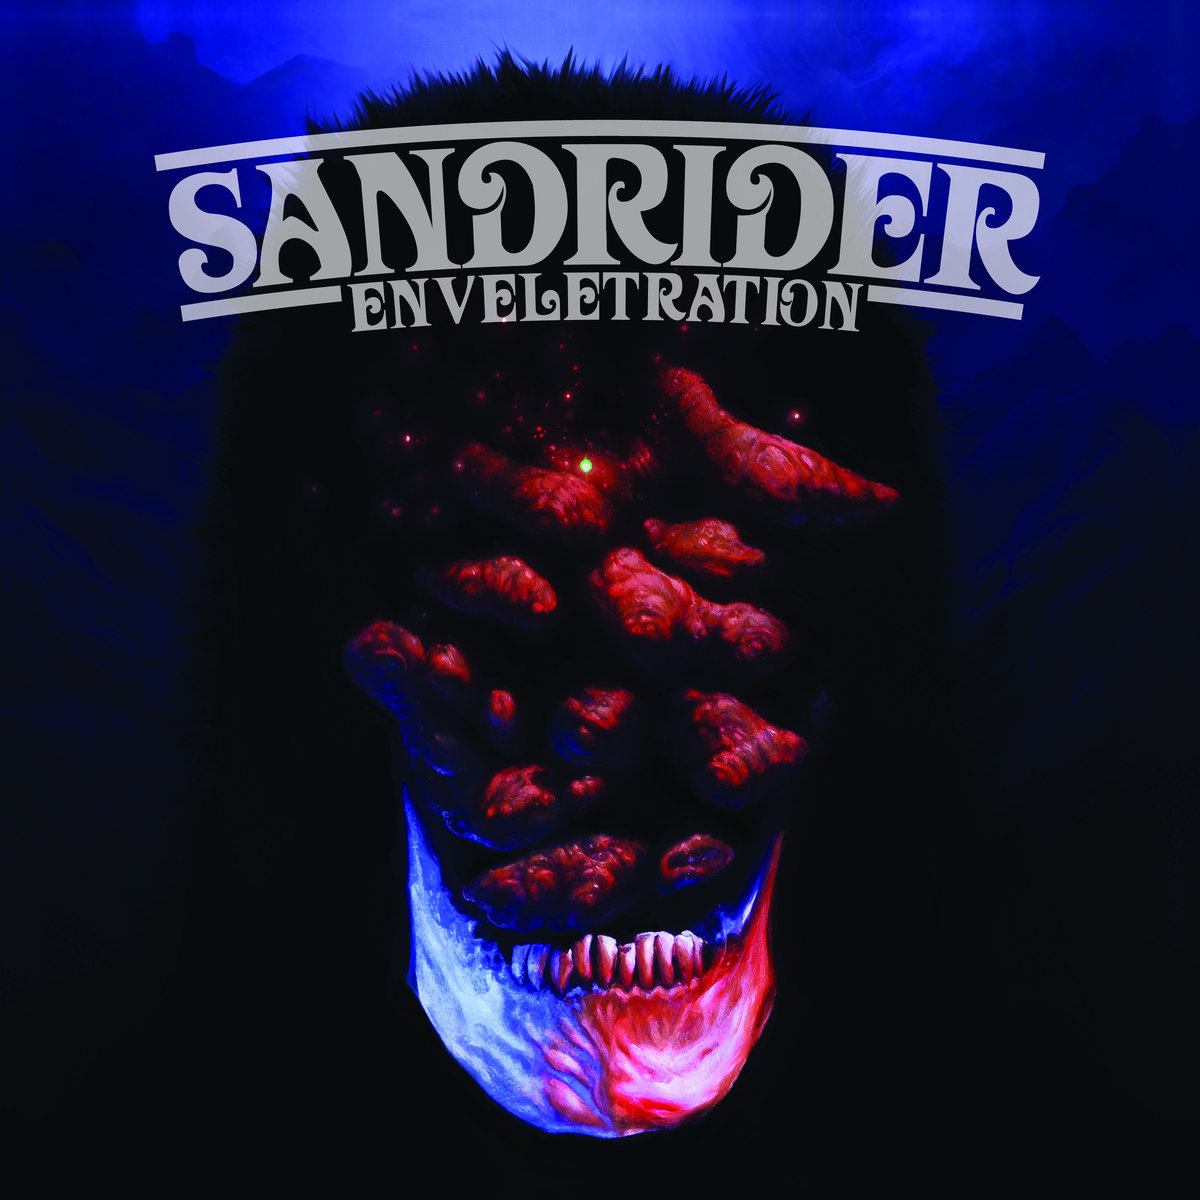 Sandrider - "Enveletration" - 2023